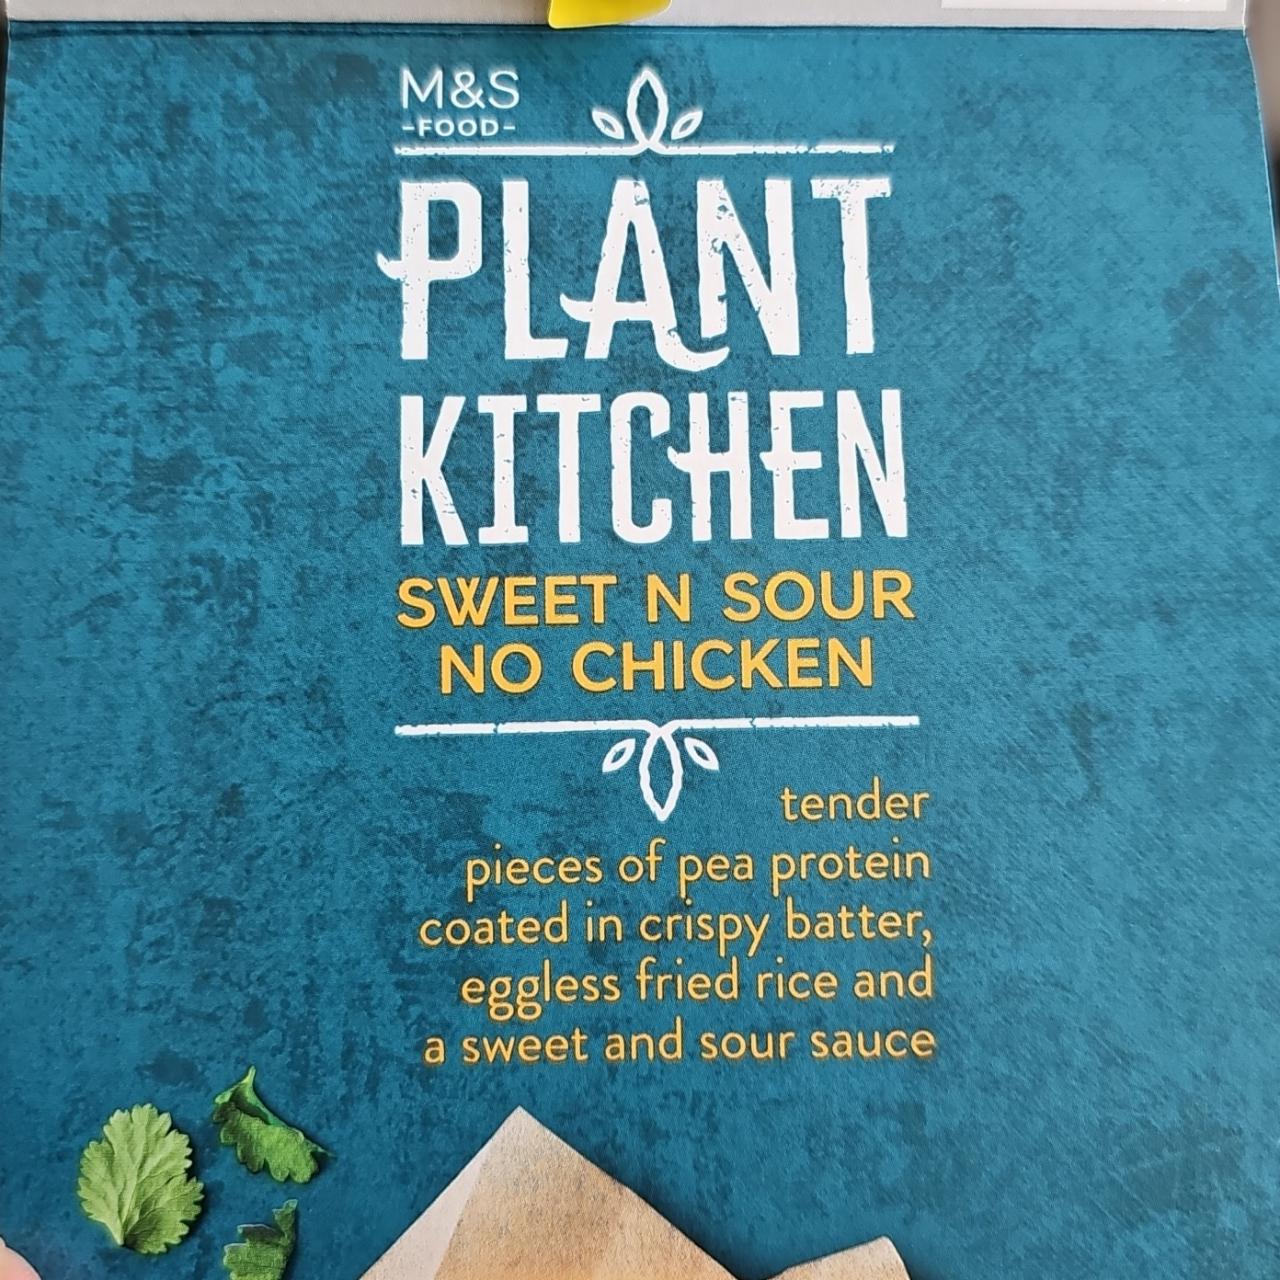 Fotografie - Plant kitchen sweet in sour no chicken M&S Food